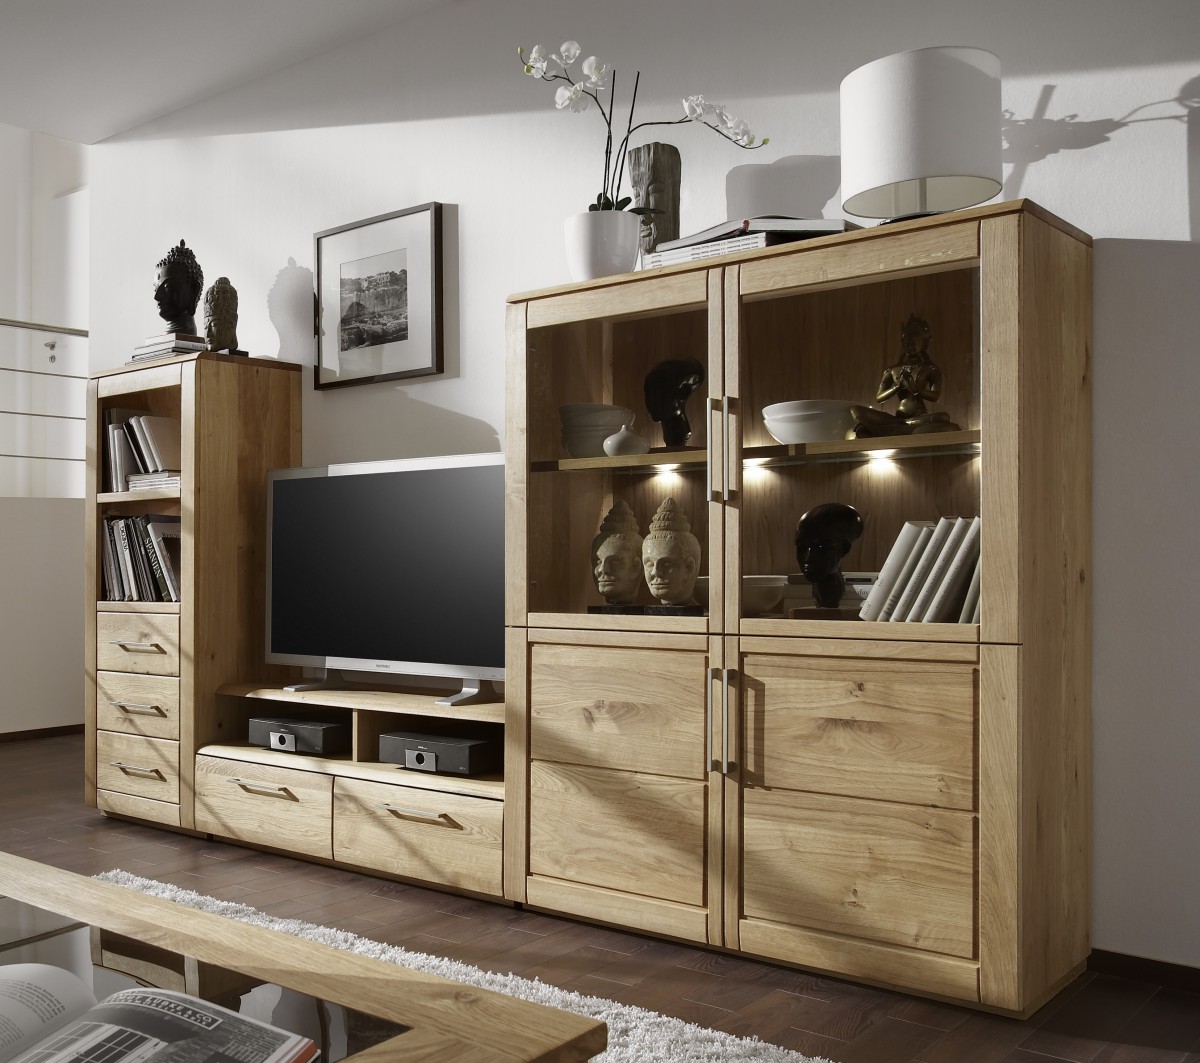 Wohnzimmerwand Fernsehwand-fernsehmöbel-modernen-design